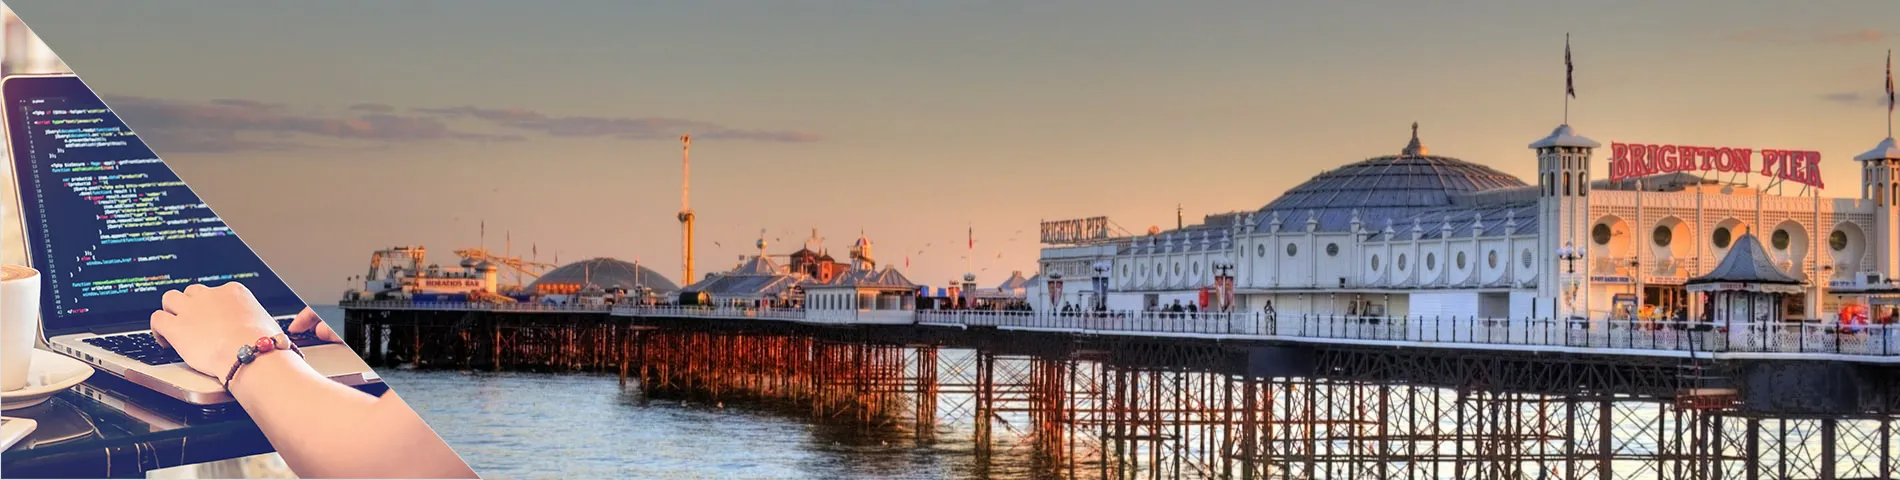 Brighton - Englanti ja tietotekniikka 